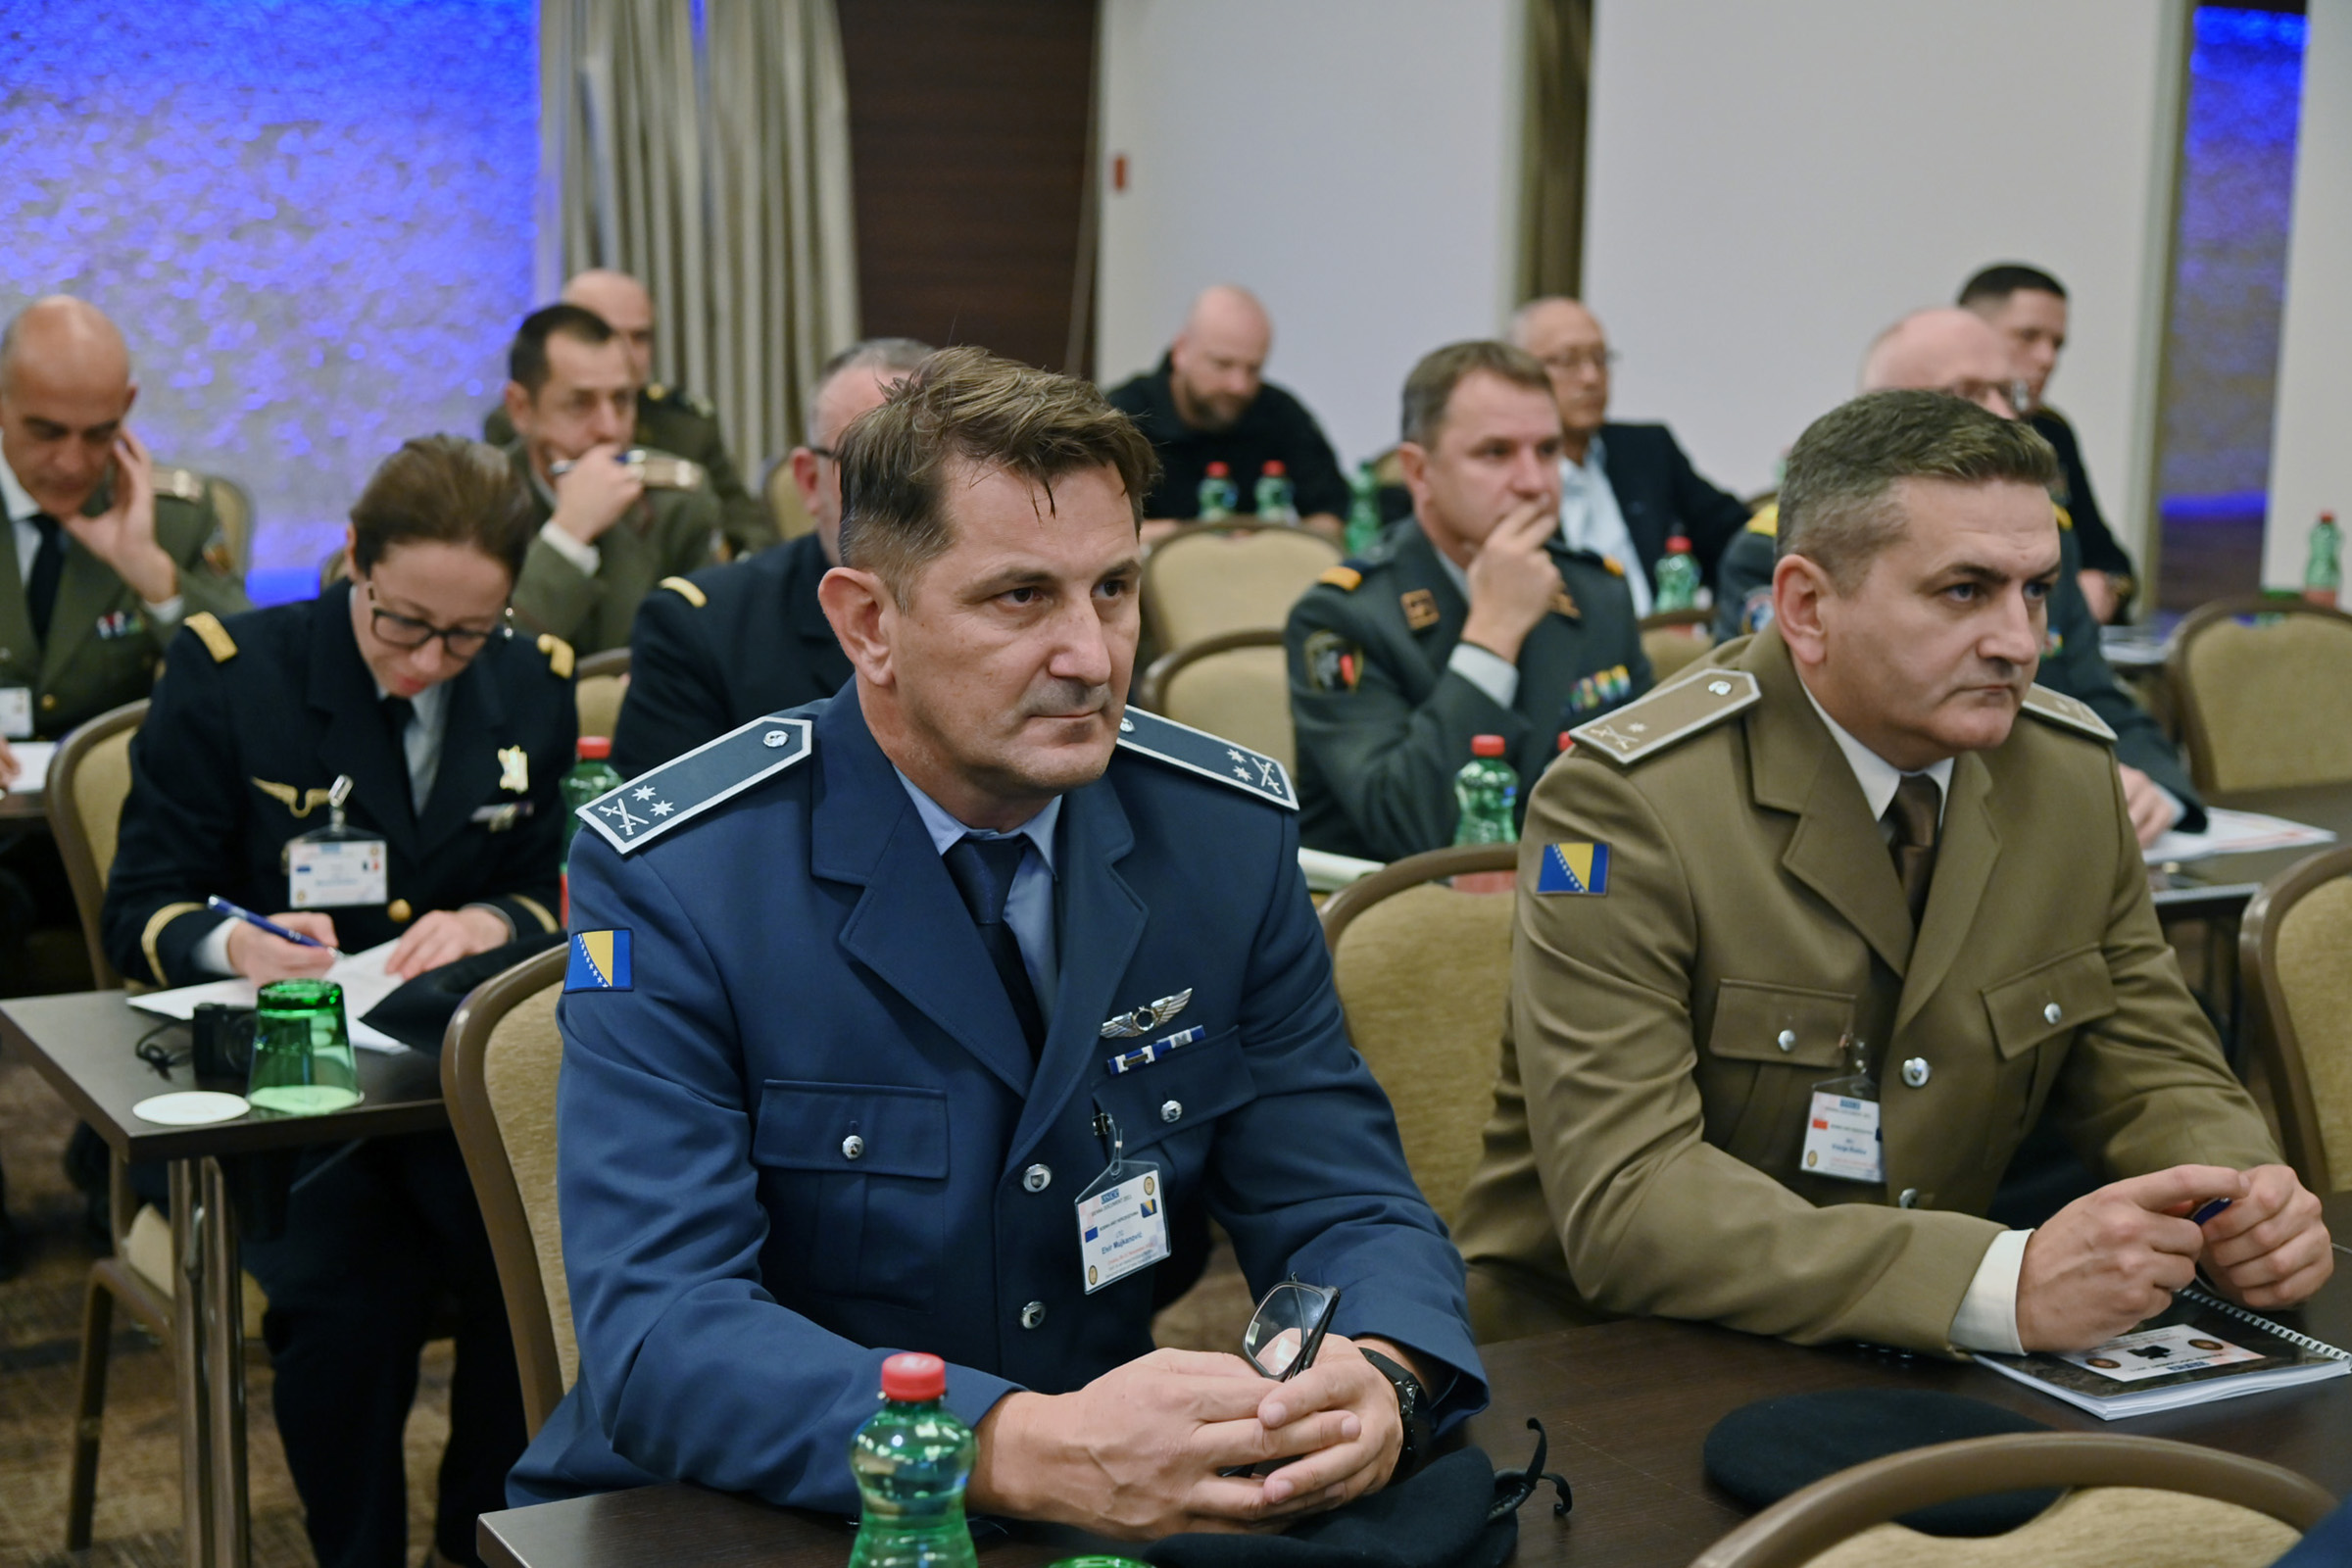 Održana međunarodna aktivnost posjete vojnih lokacija po Bečkom dokumentu 2011